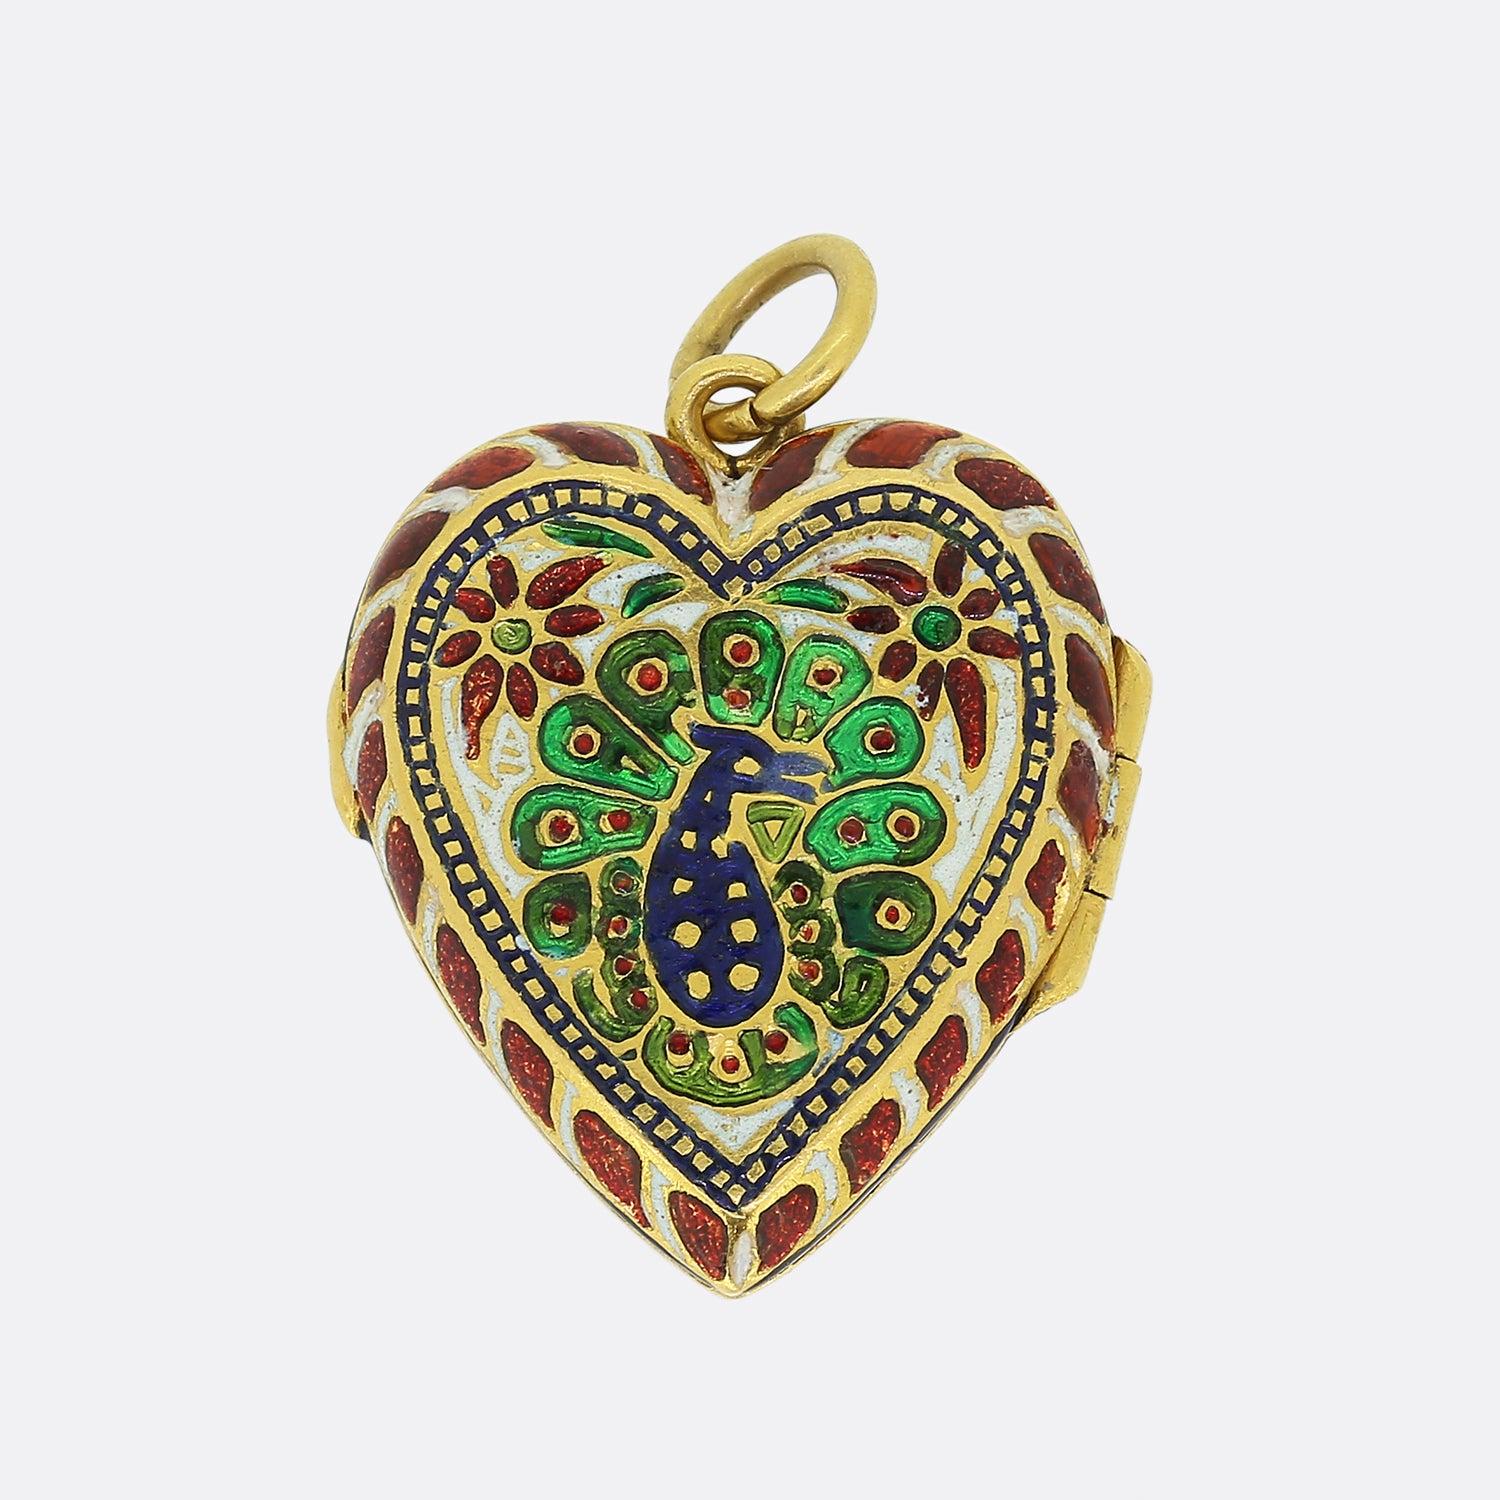 Nous avons ici un remarquable médaillon en forme de cœur produit à l'époque moghole. Les bijoux moghols sont réputés pour leurs motifs exotiques, les oiseaux, les fleurs et les cachemires étant les thèmes les plus courants à l'époque, et cette pièce